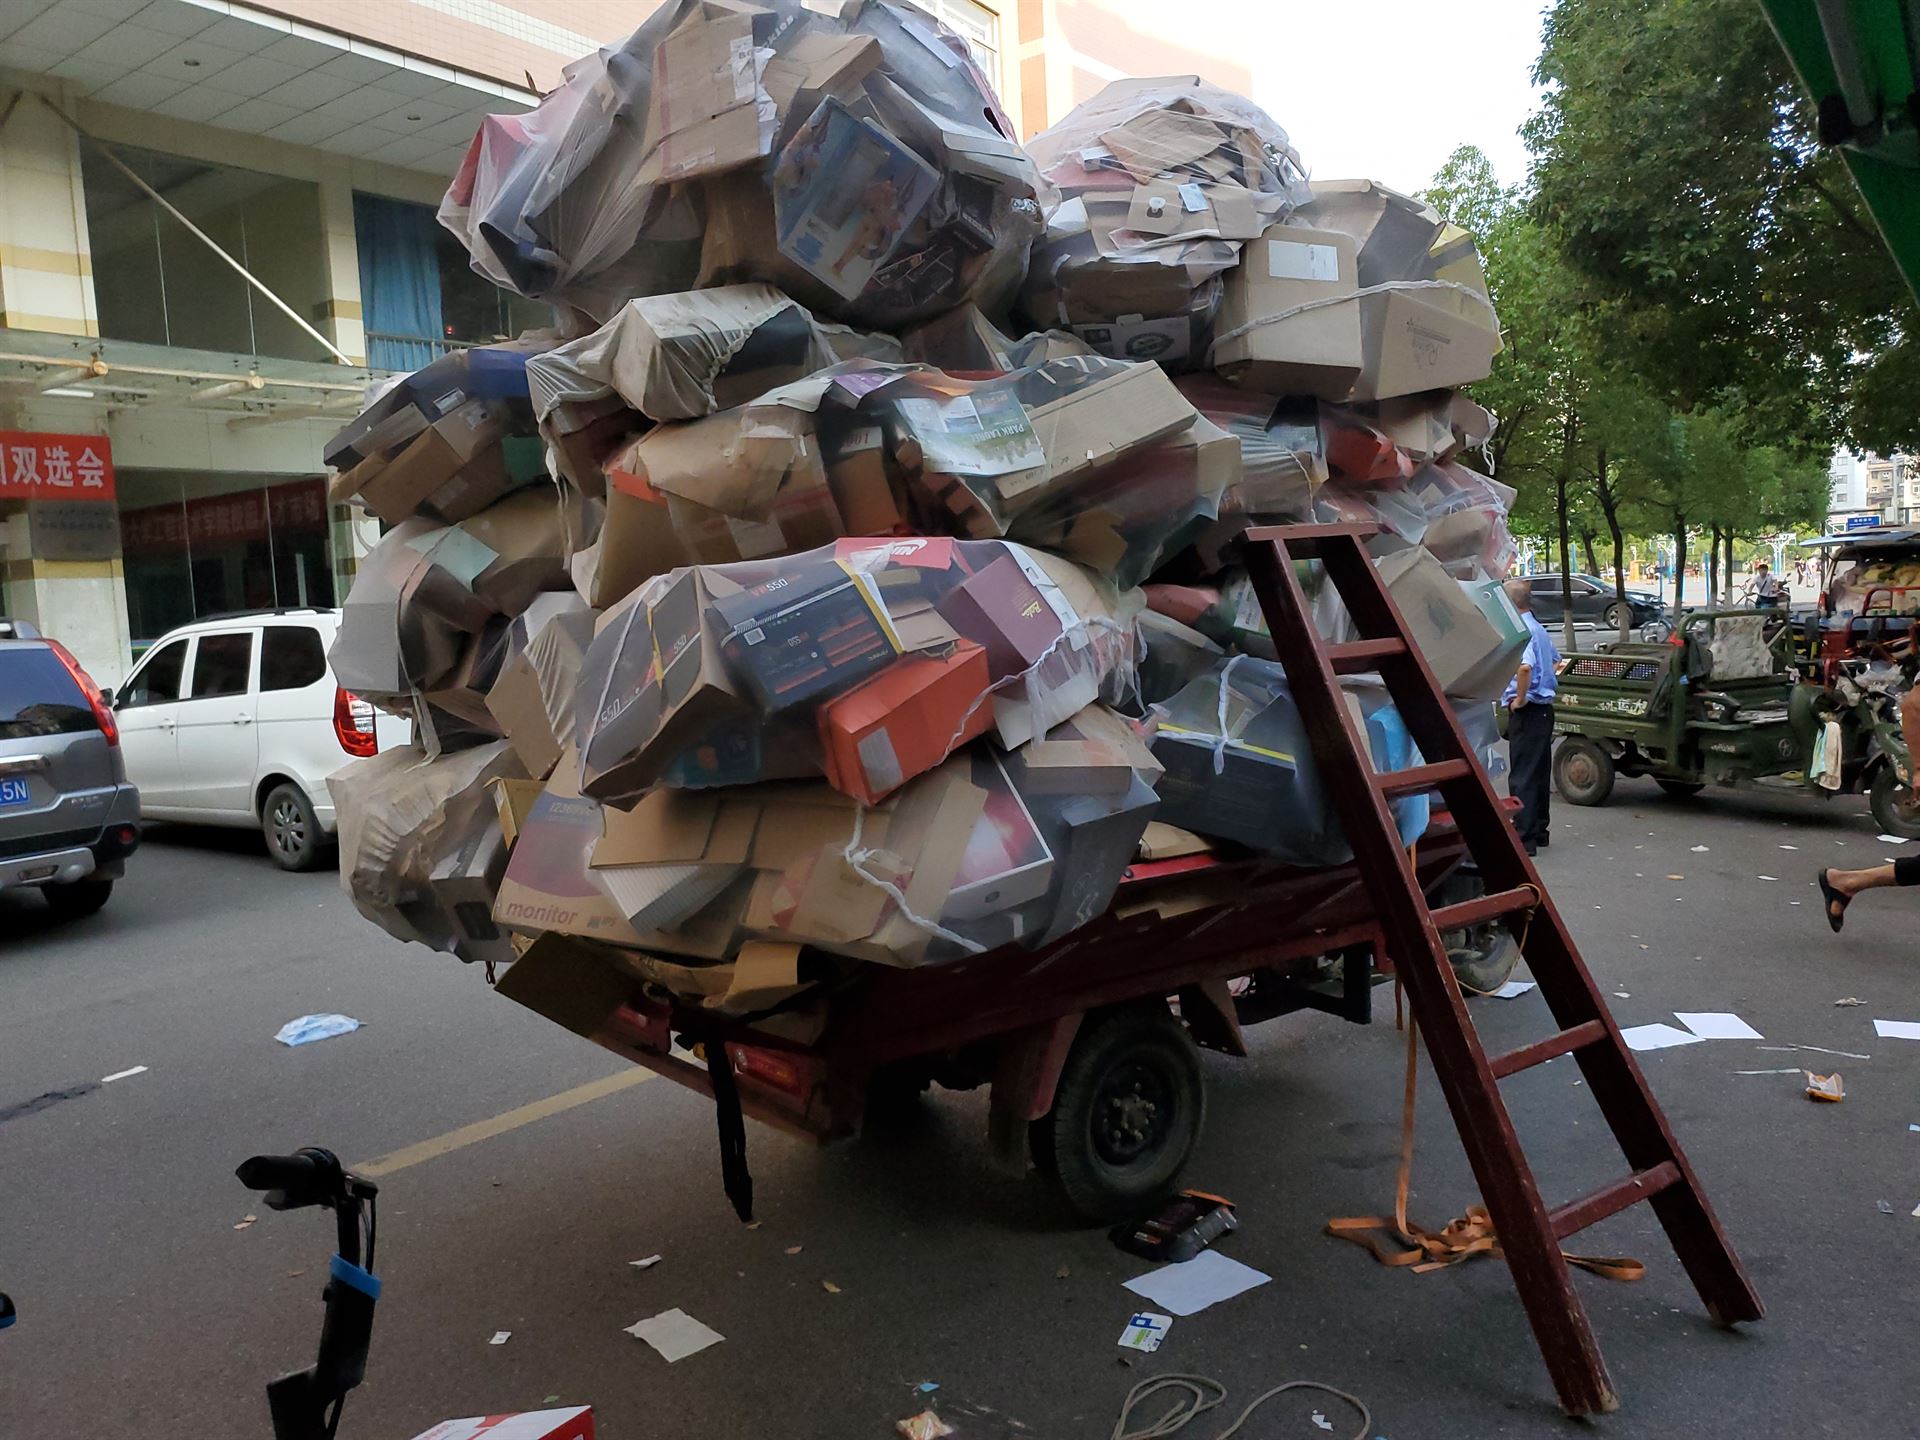 big stack of garbage on cart